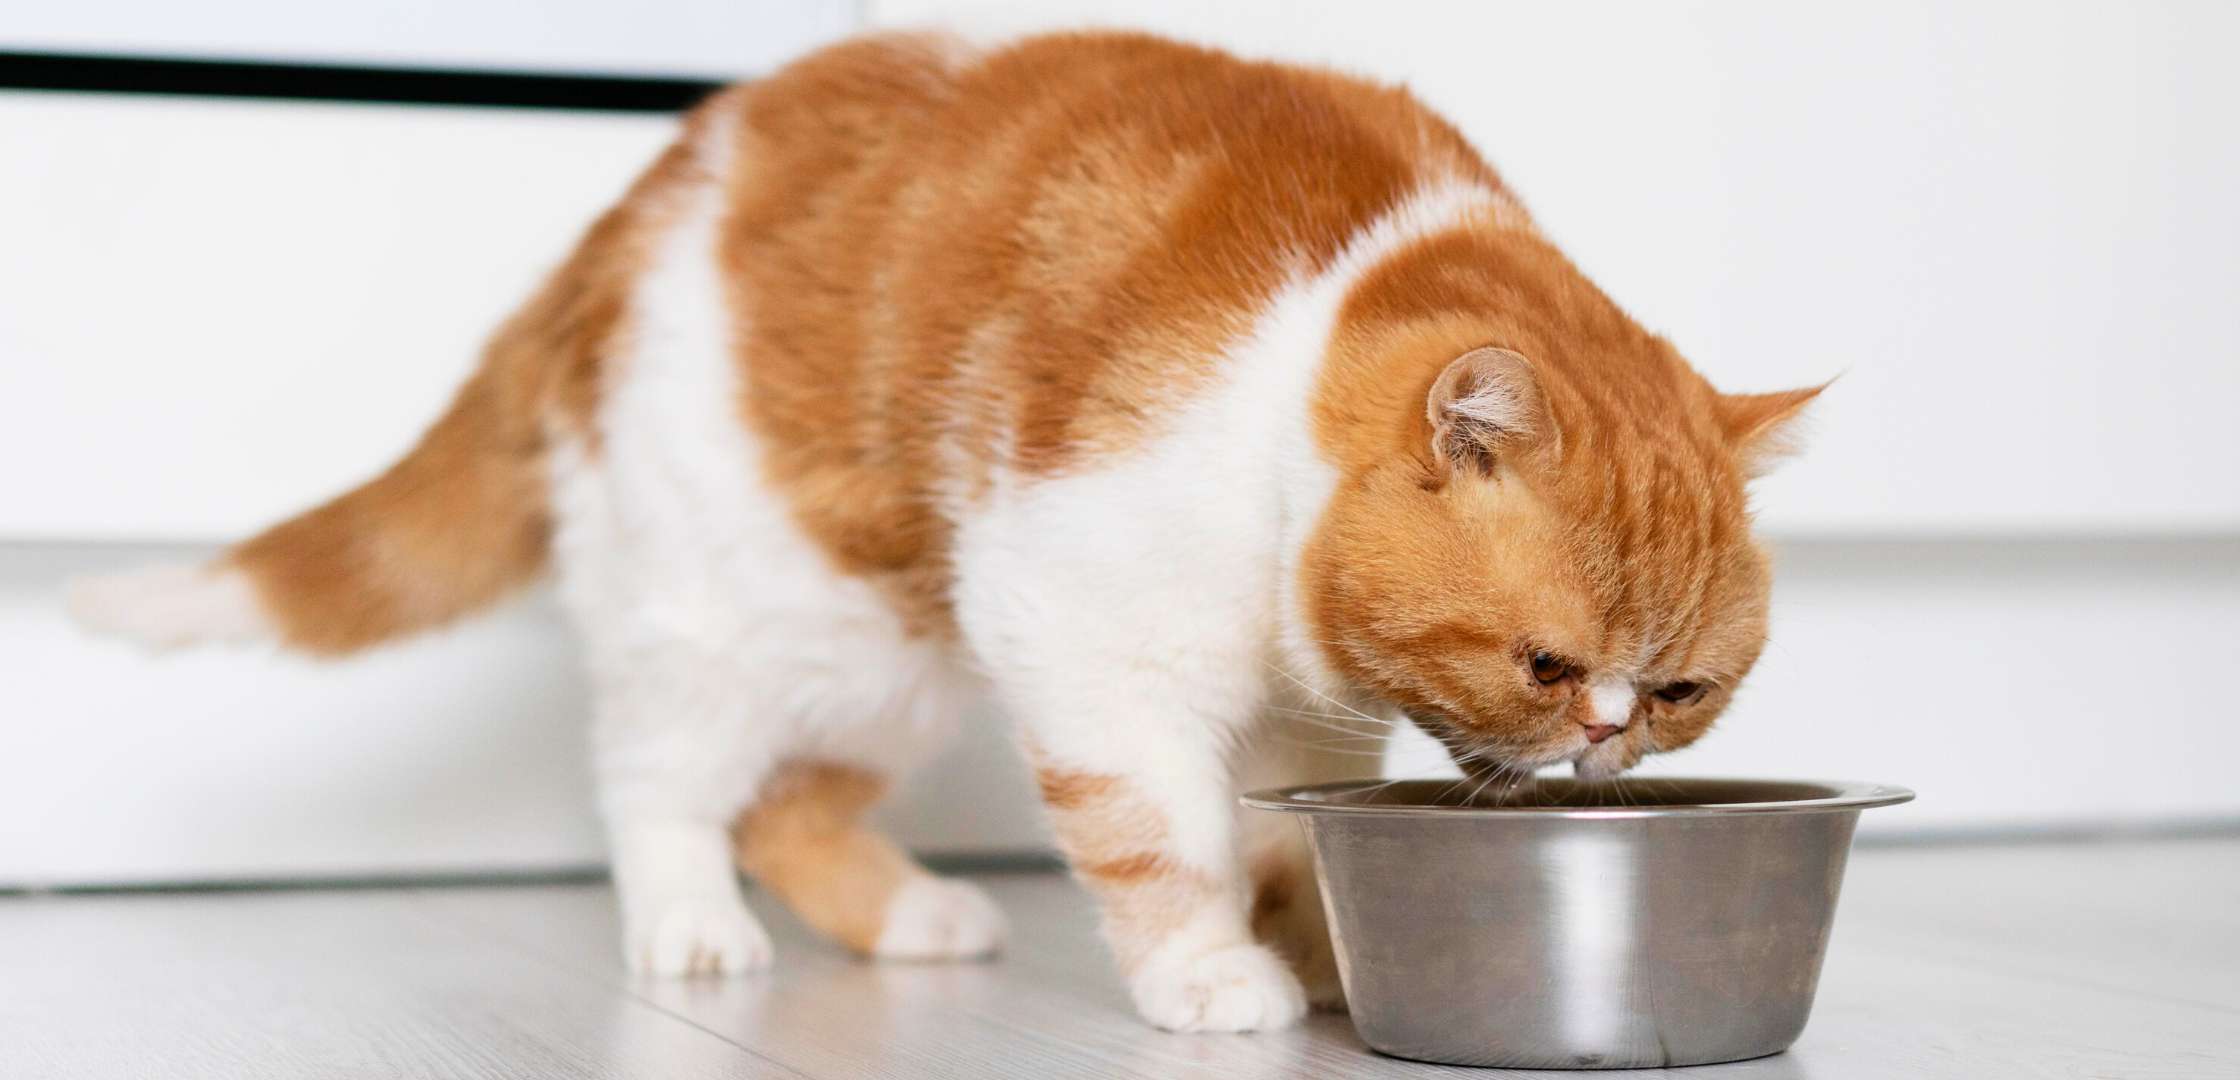 חתול ג'ינג'י אוכל מזון יבש מקערה